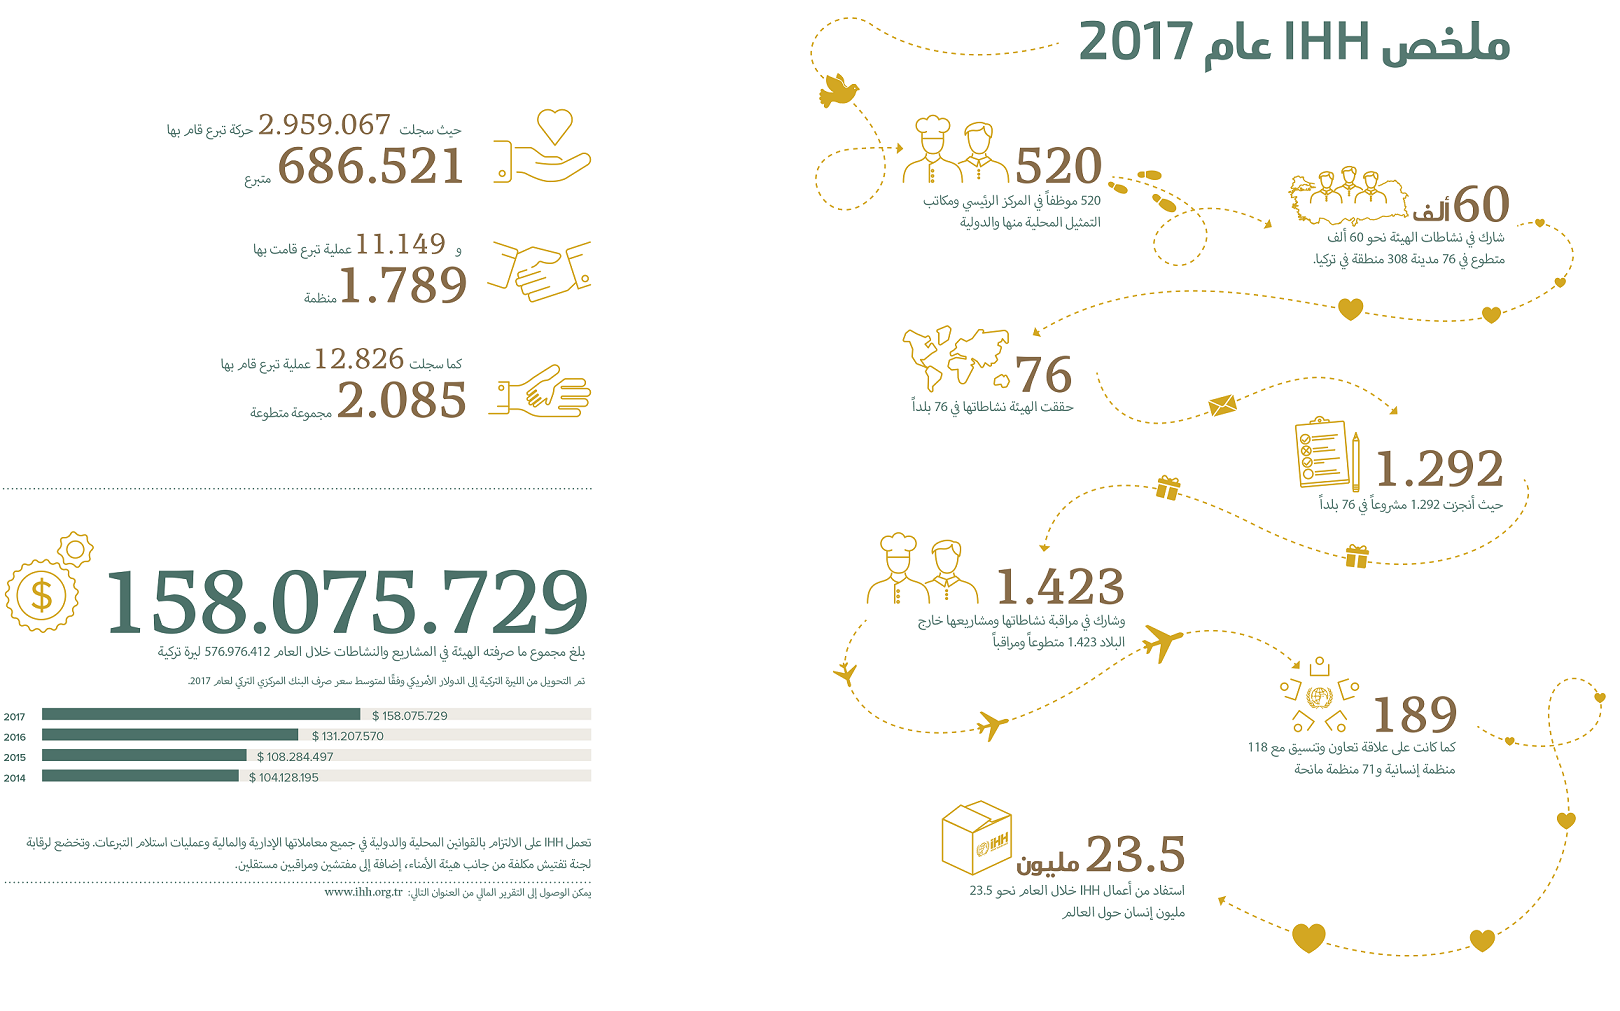 ihh-annual-report-2017-3.png